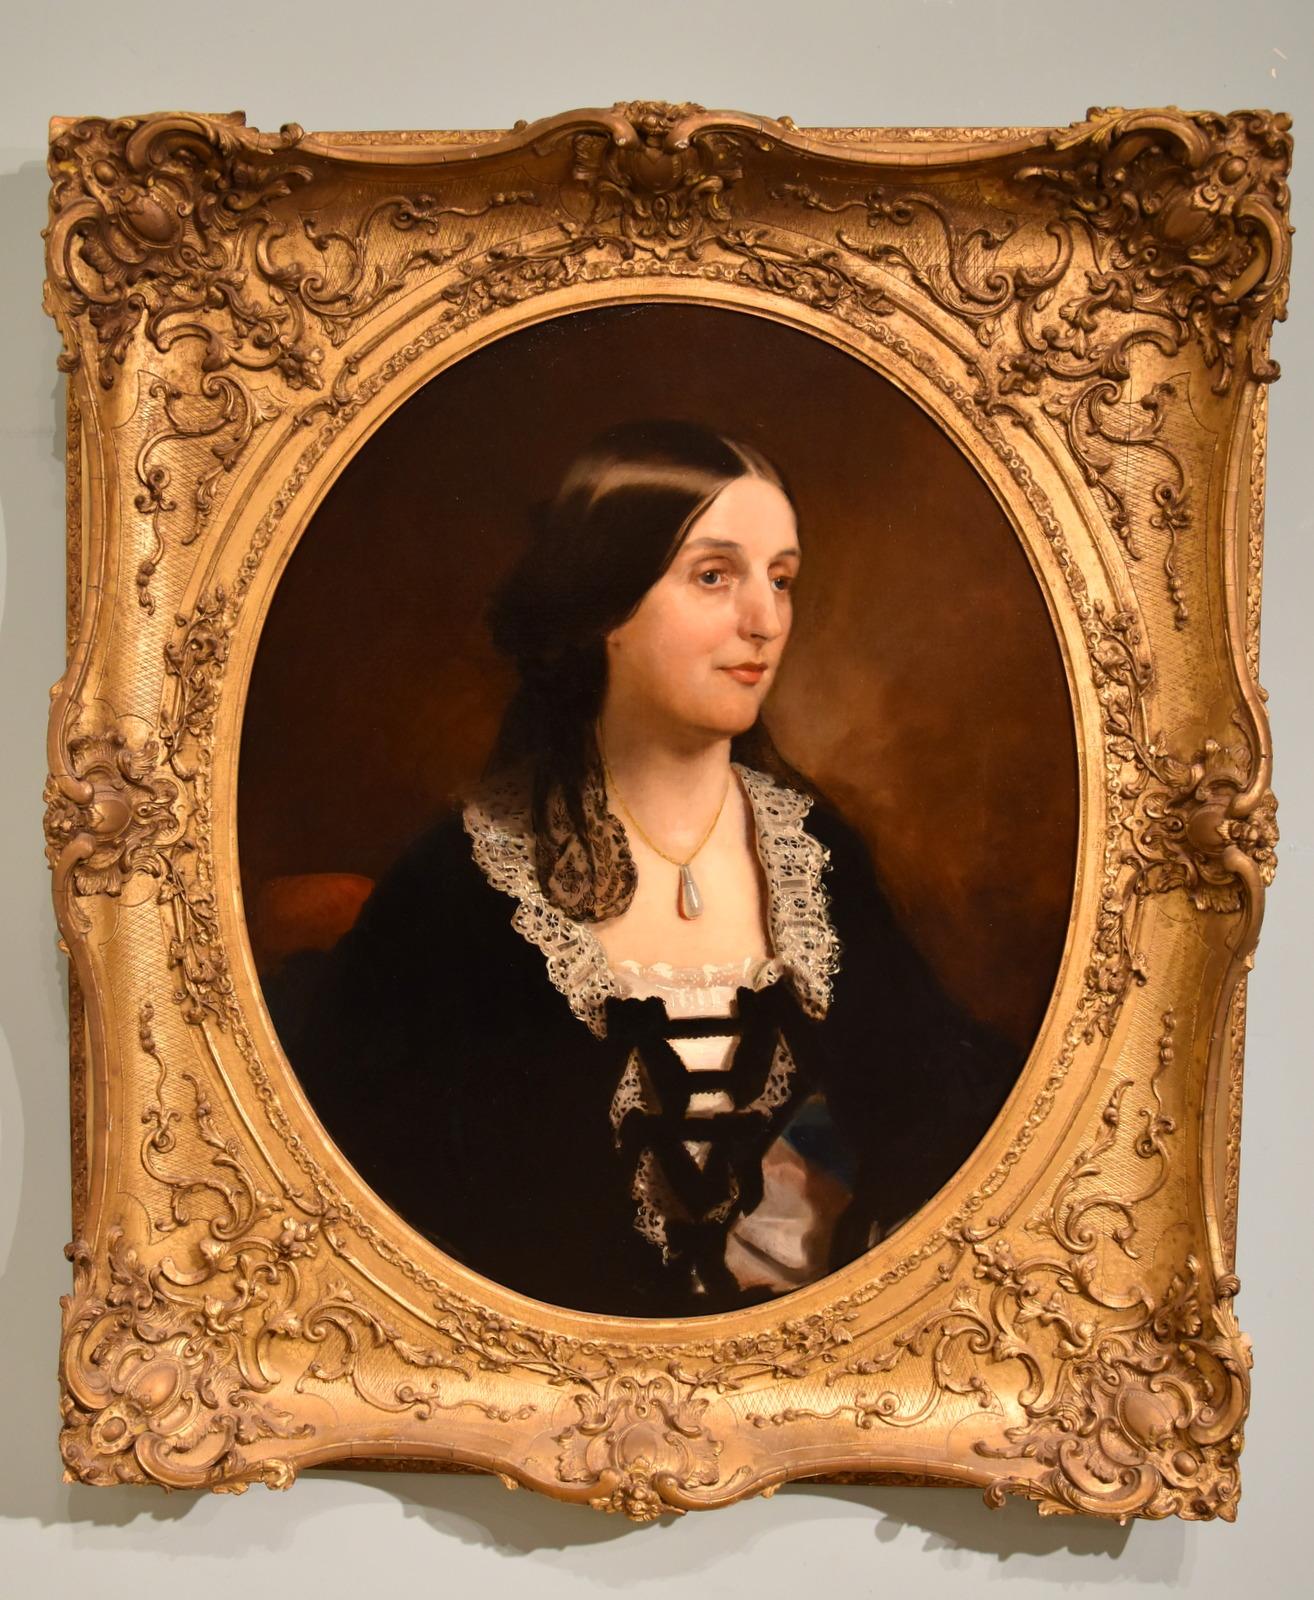 "Jane Lady Lurgan" Peinture à l'huile de Henry Weigall Junior (1829-1925) était le fils du sculpteur, graveur de camées et médailleur Henry Weigall (1800-1883). Weigall Junior expose à la Royal Academy à partir de 1846, se spécialisant dans le